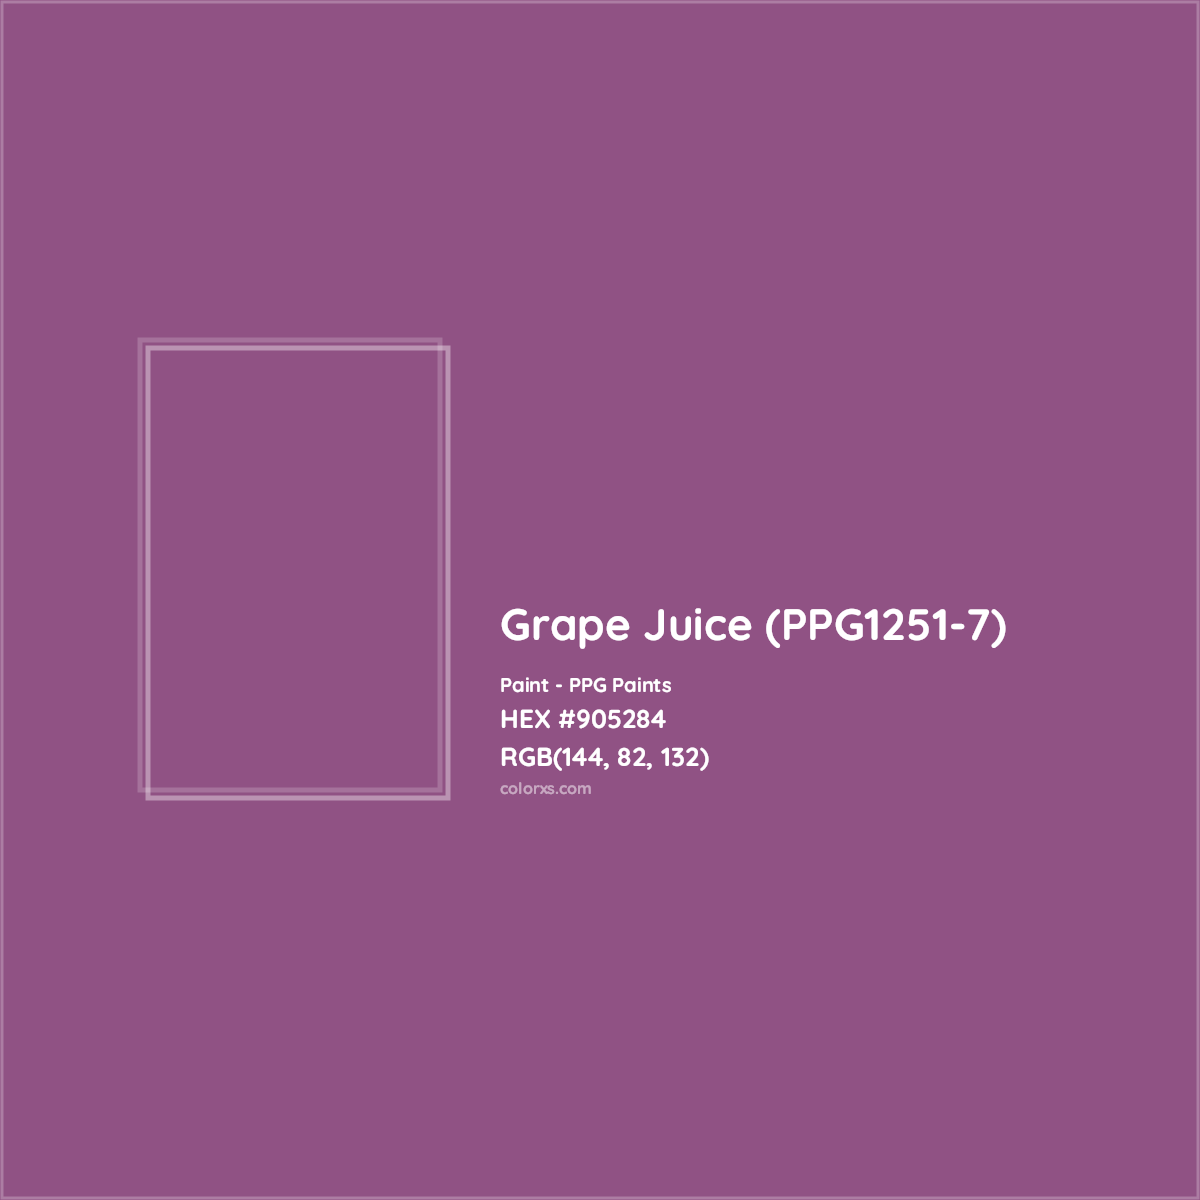 HEX #905284 Grape Juice (PPG1251-7) Paint PPG Paints - Color Code